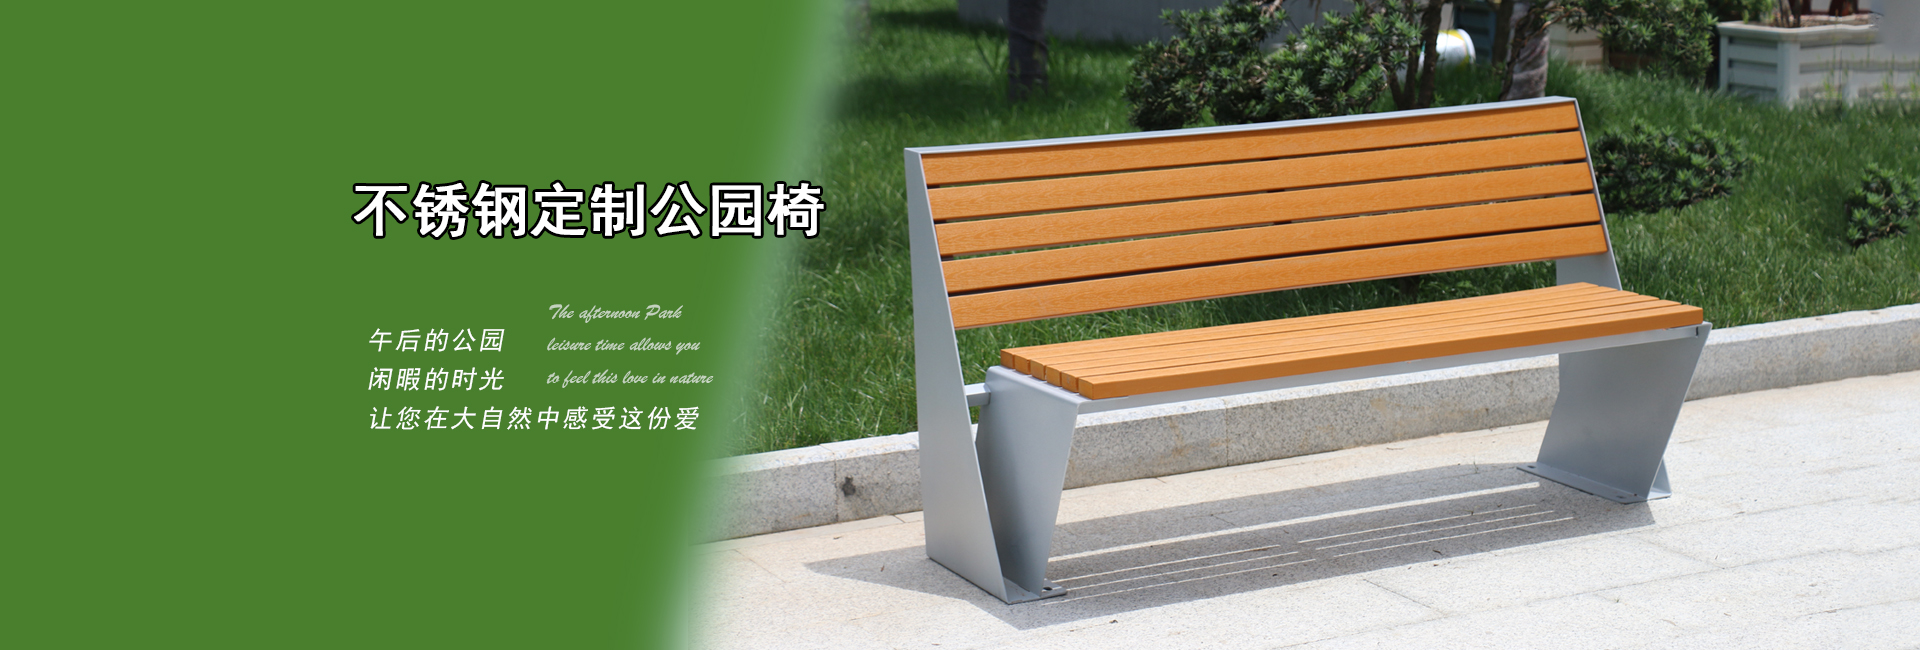 舒纳和专业生产定制:户外公园椅|不锈钢公园椅|异形公园椅|铸铝公园椅,等户外产品.